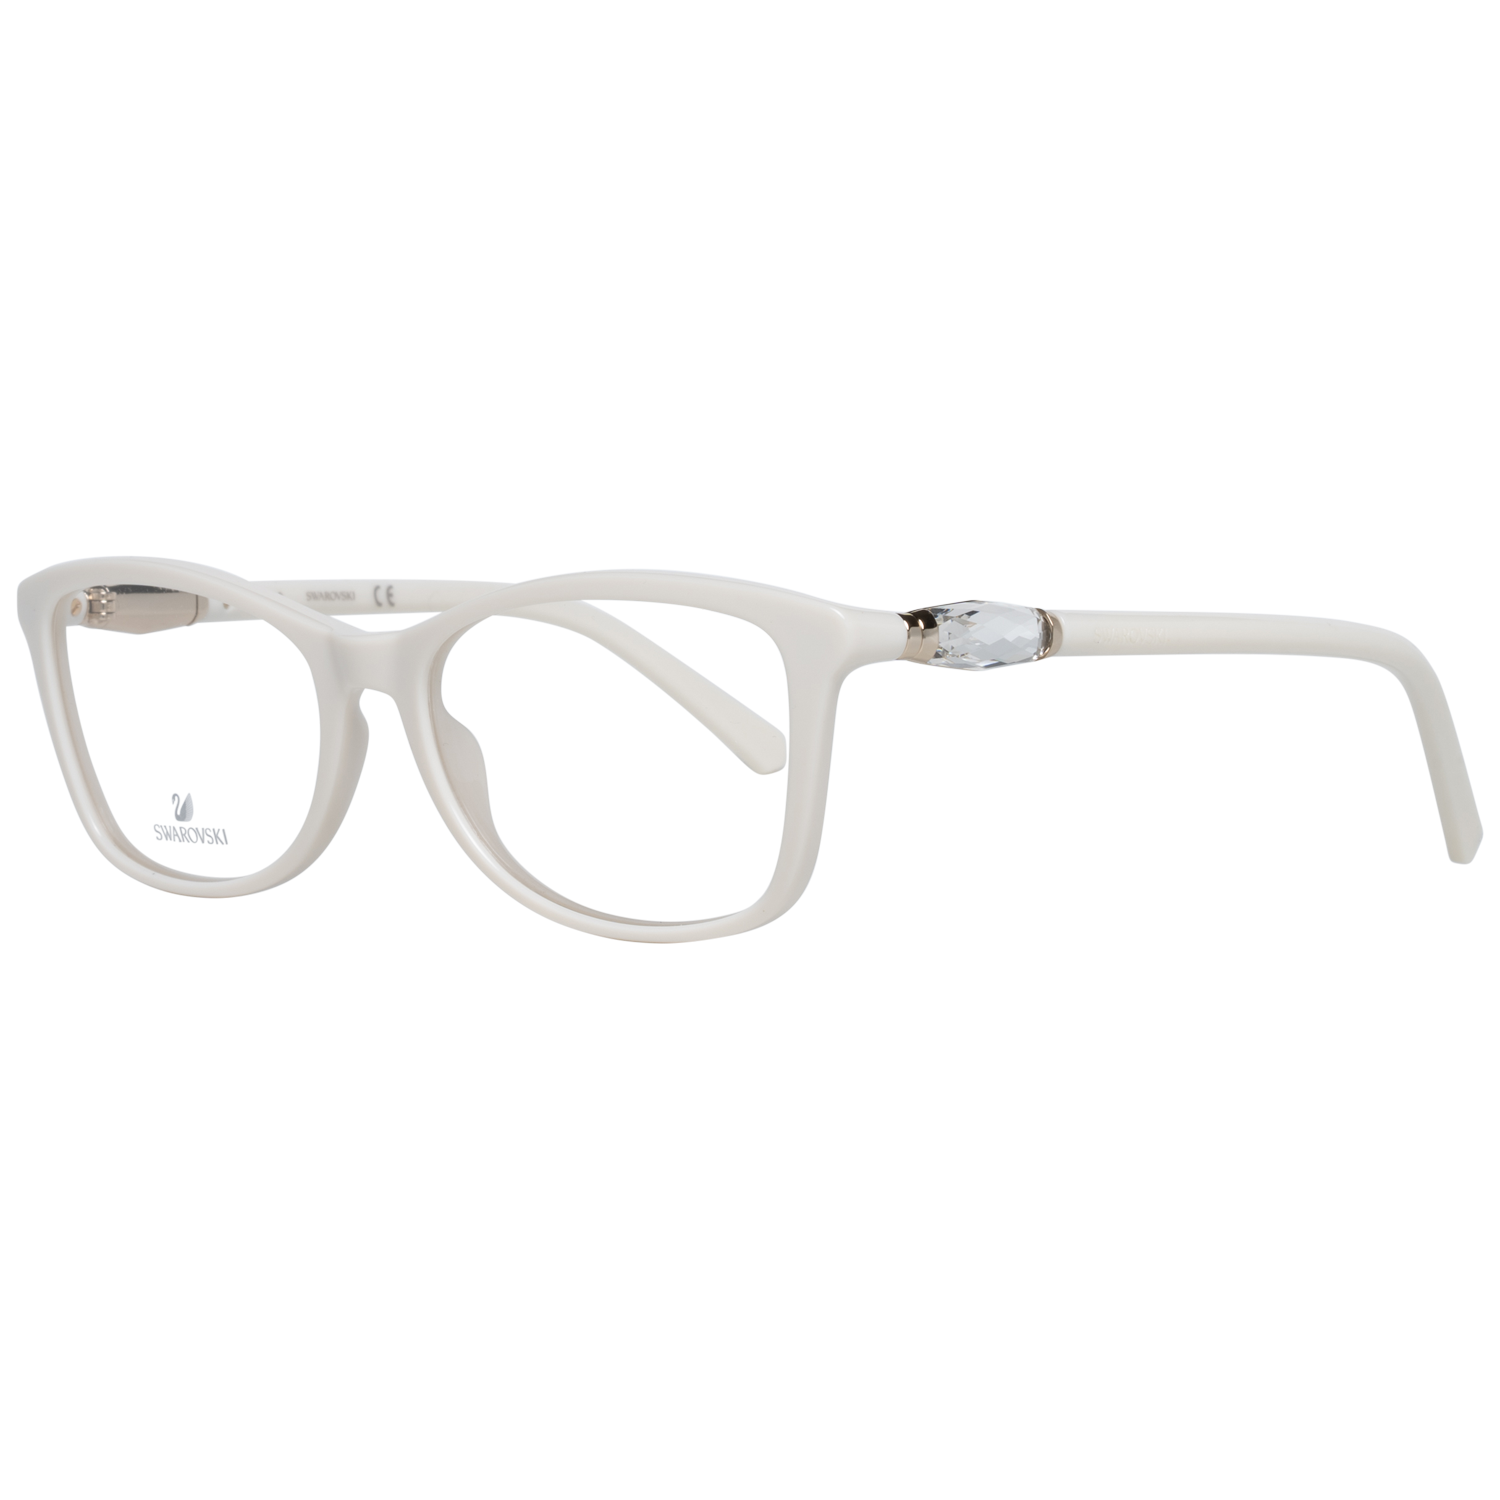 Swarovski Frames Swarovski Women Glasses Optical Frame SK5336 024 53 Eyeglasses Eyewear UK USA Australia 